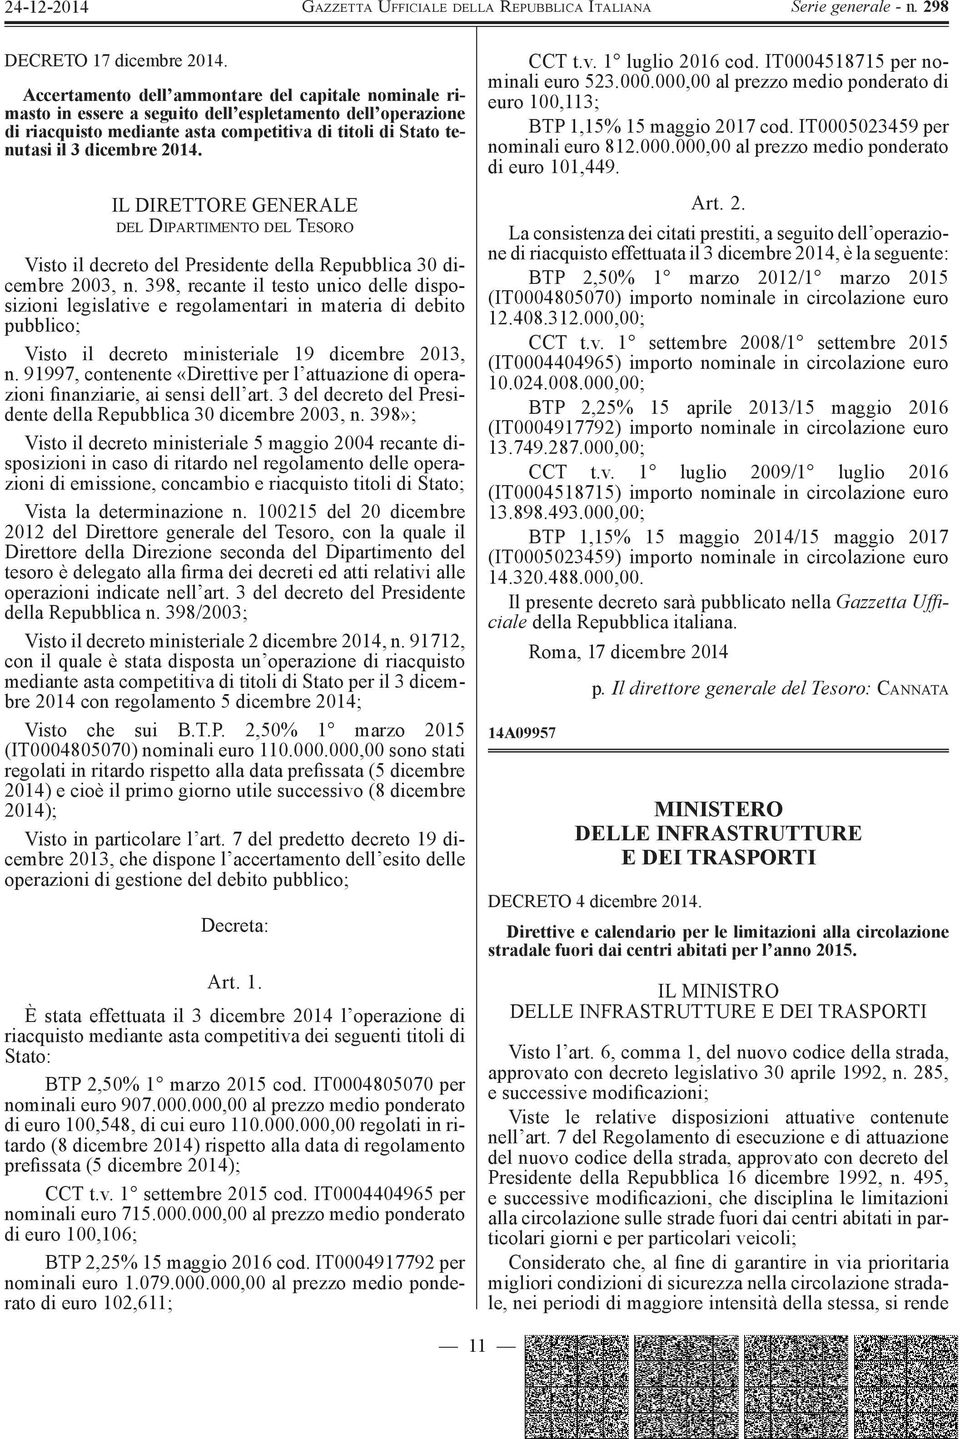 IL DIRETTORE GENERALE DEL DIPARTIMENTO DEL TESORO Visto il decreto del Presidente della Repubblica 30 dicembre 2003, n.